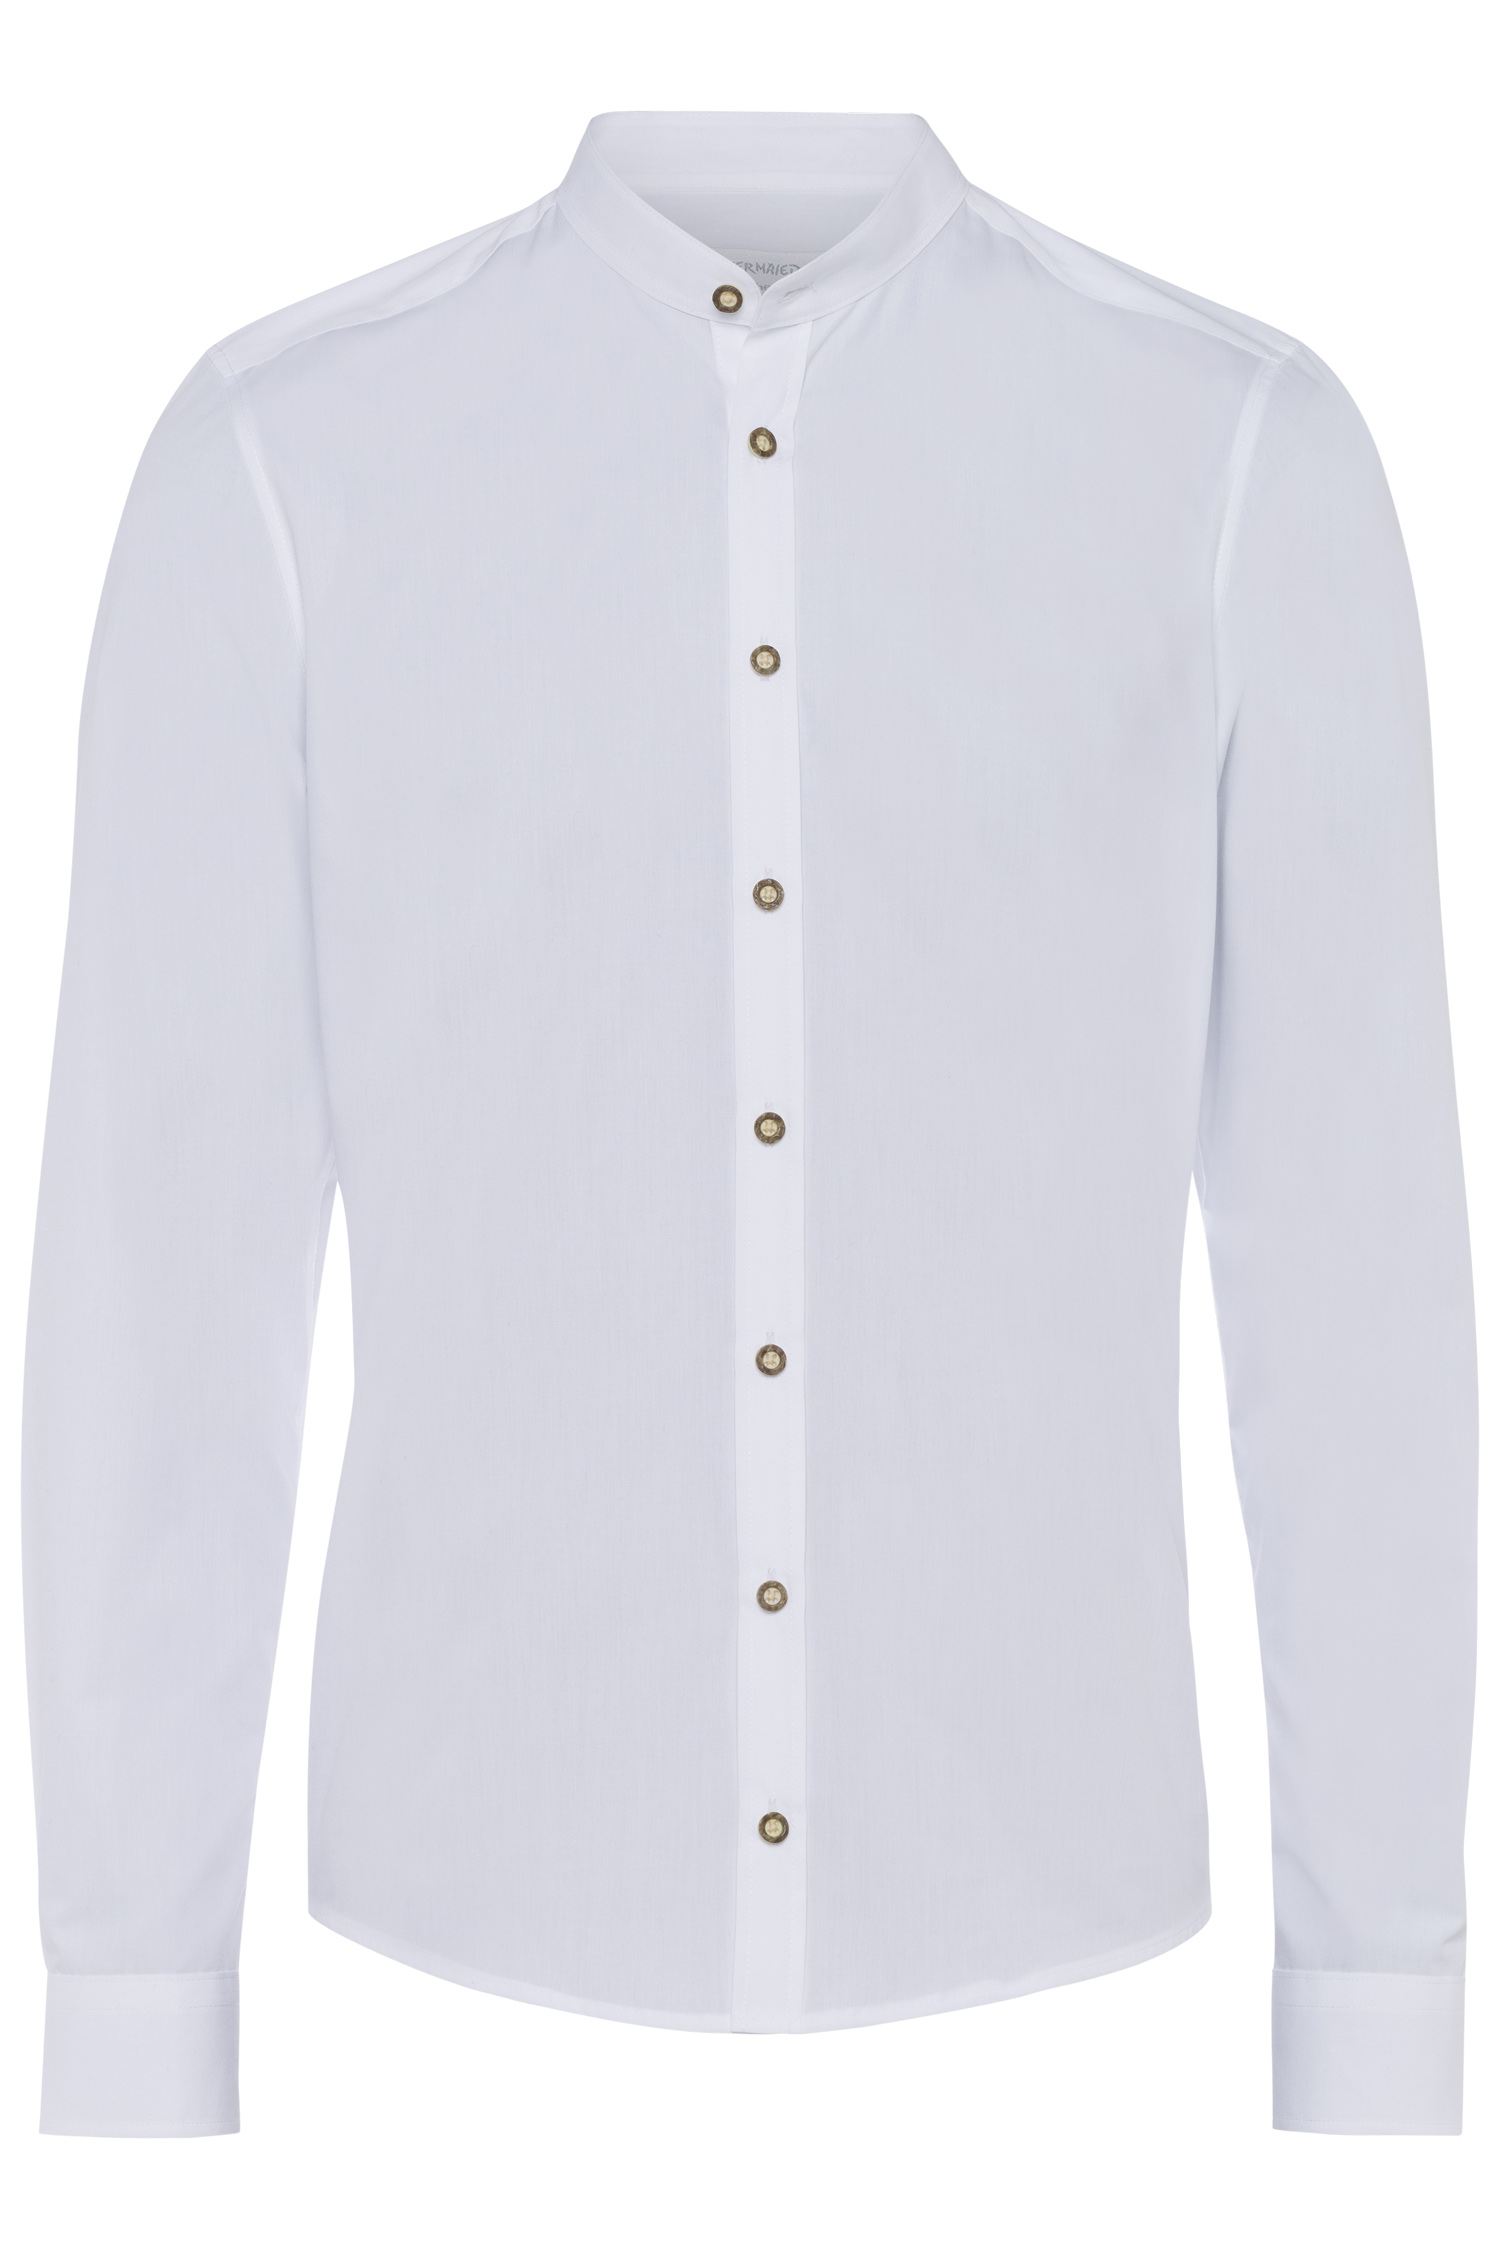 Trachtenhemd Stehkragen modern fit 3XL | 900 uni weiß